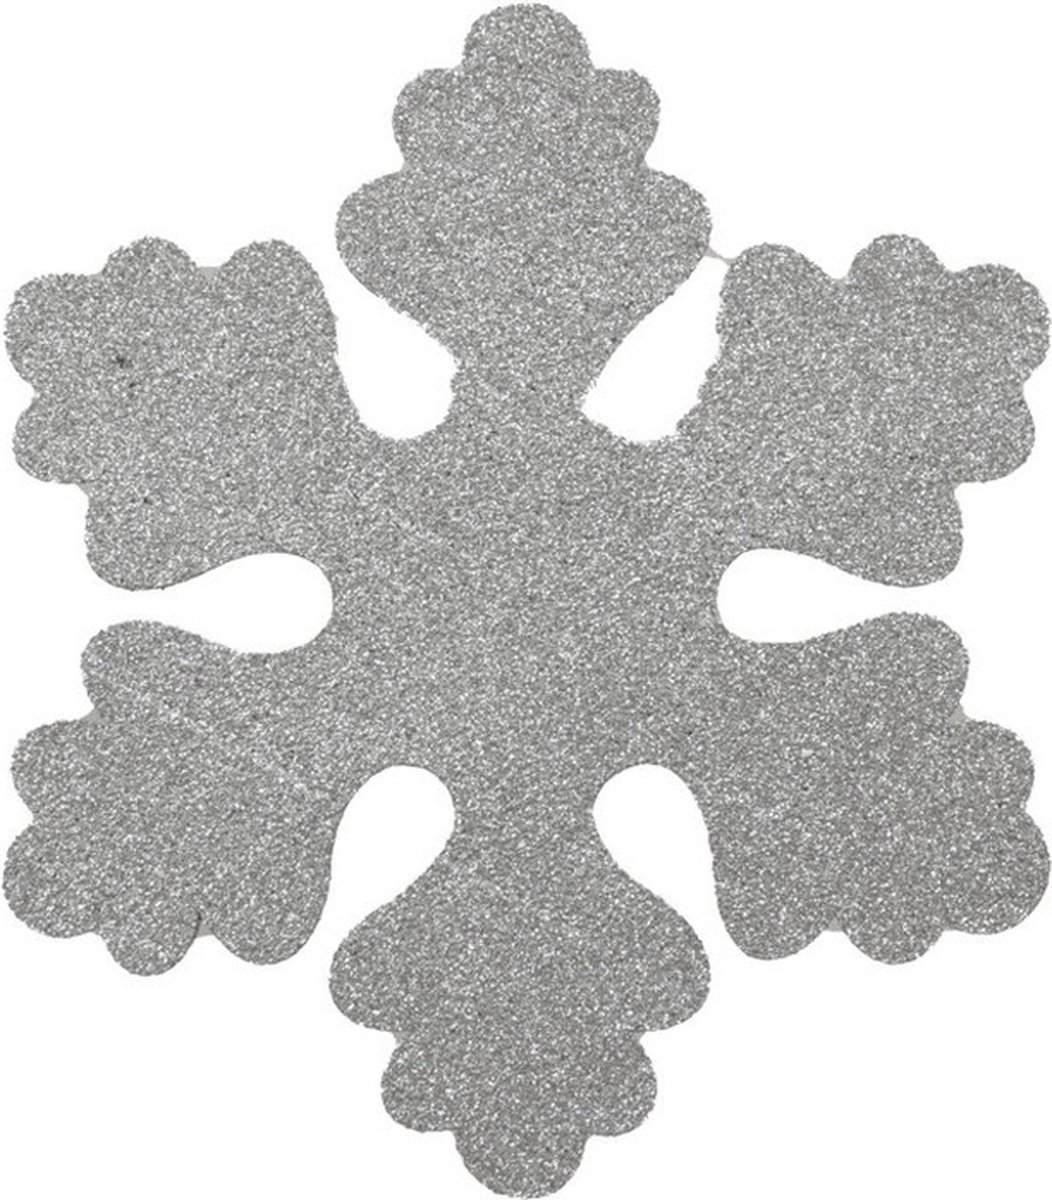 4x Zilveren sneeuwvlokken 25 cm - hangdecoratie / boomversiering zilver